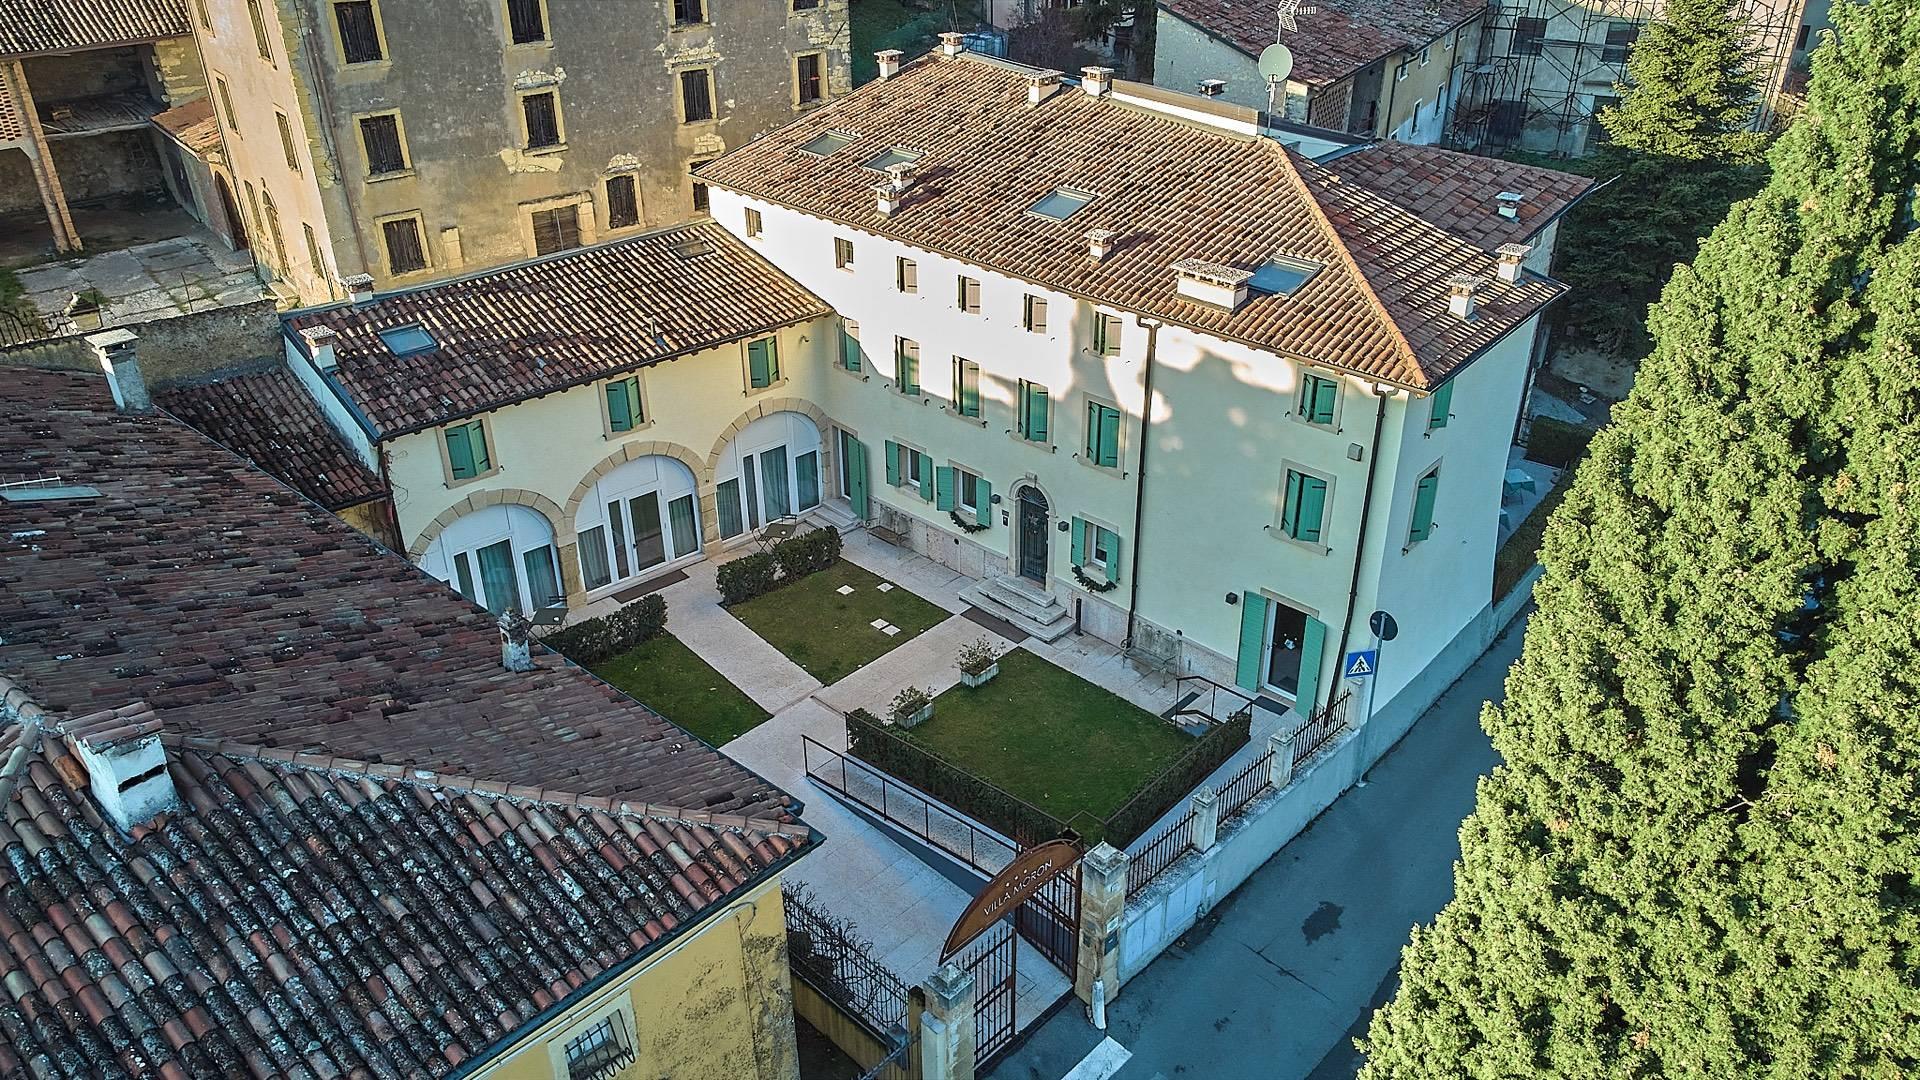 Villa utilisée comme hôtel de charme sur les collines de Valpolicella - 4